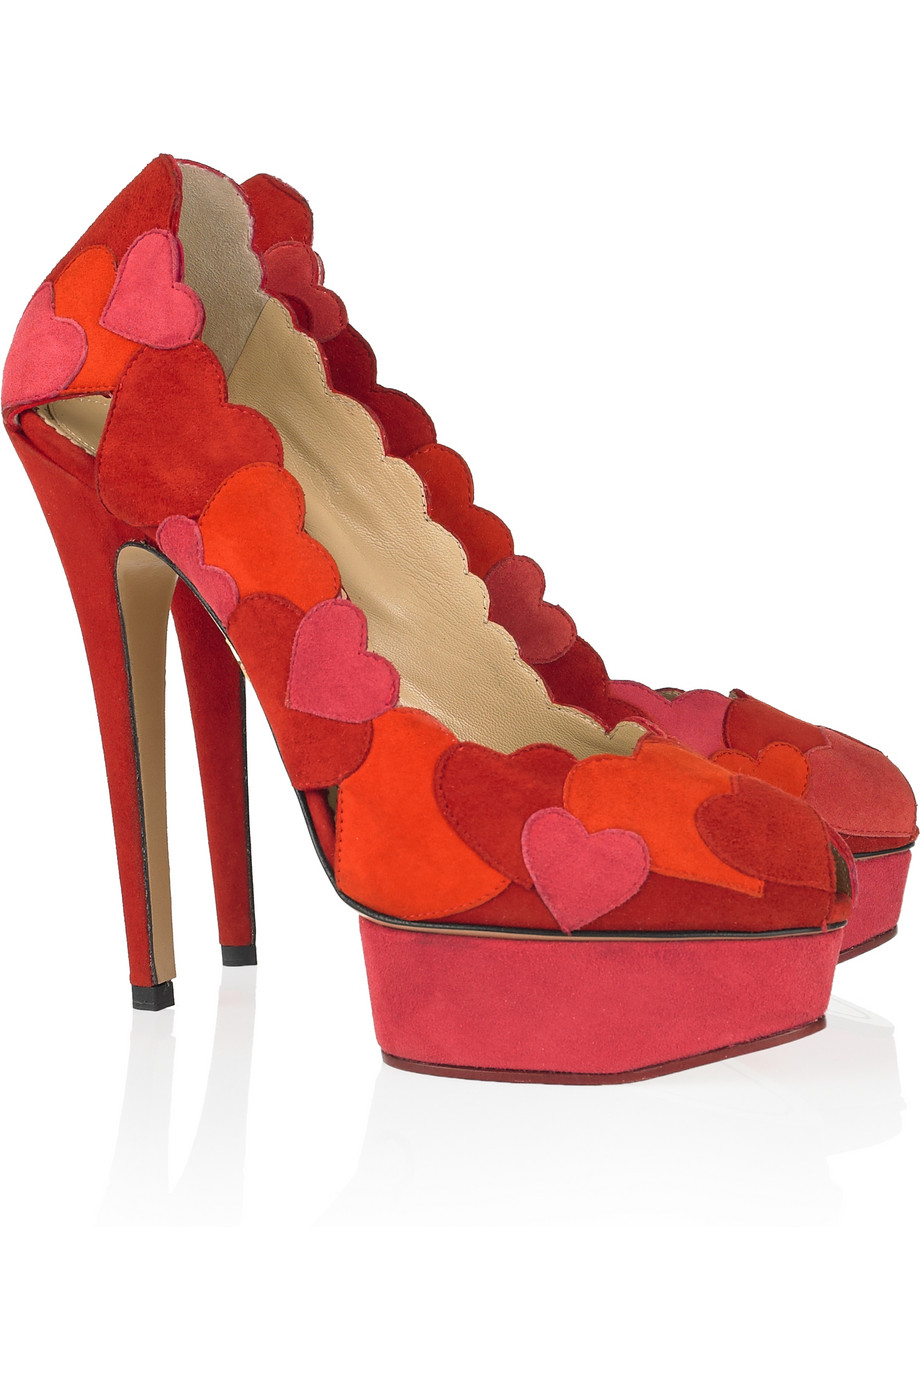 zapatos-charlotte-olympia-rojo